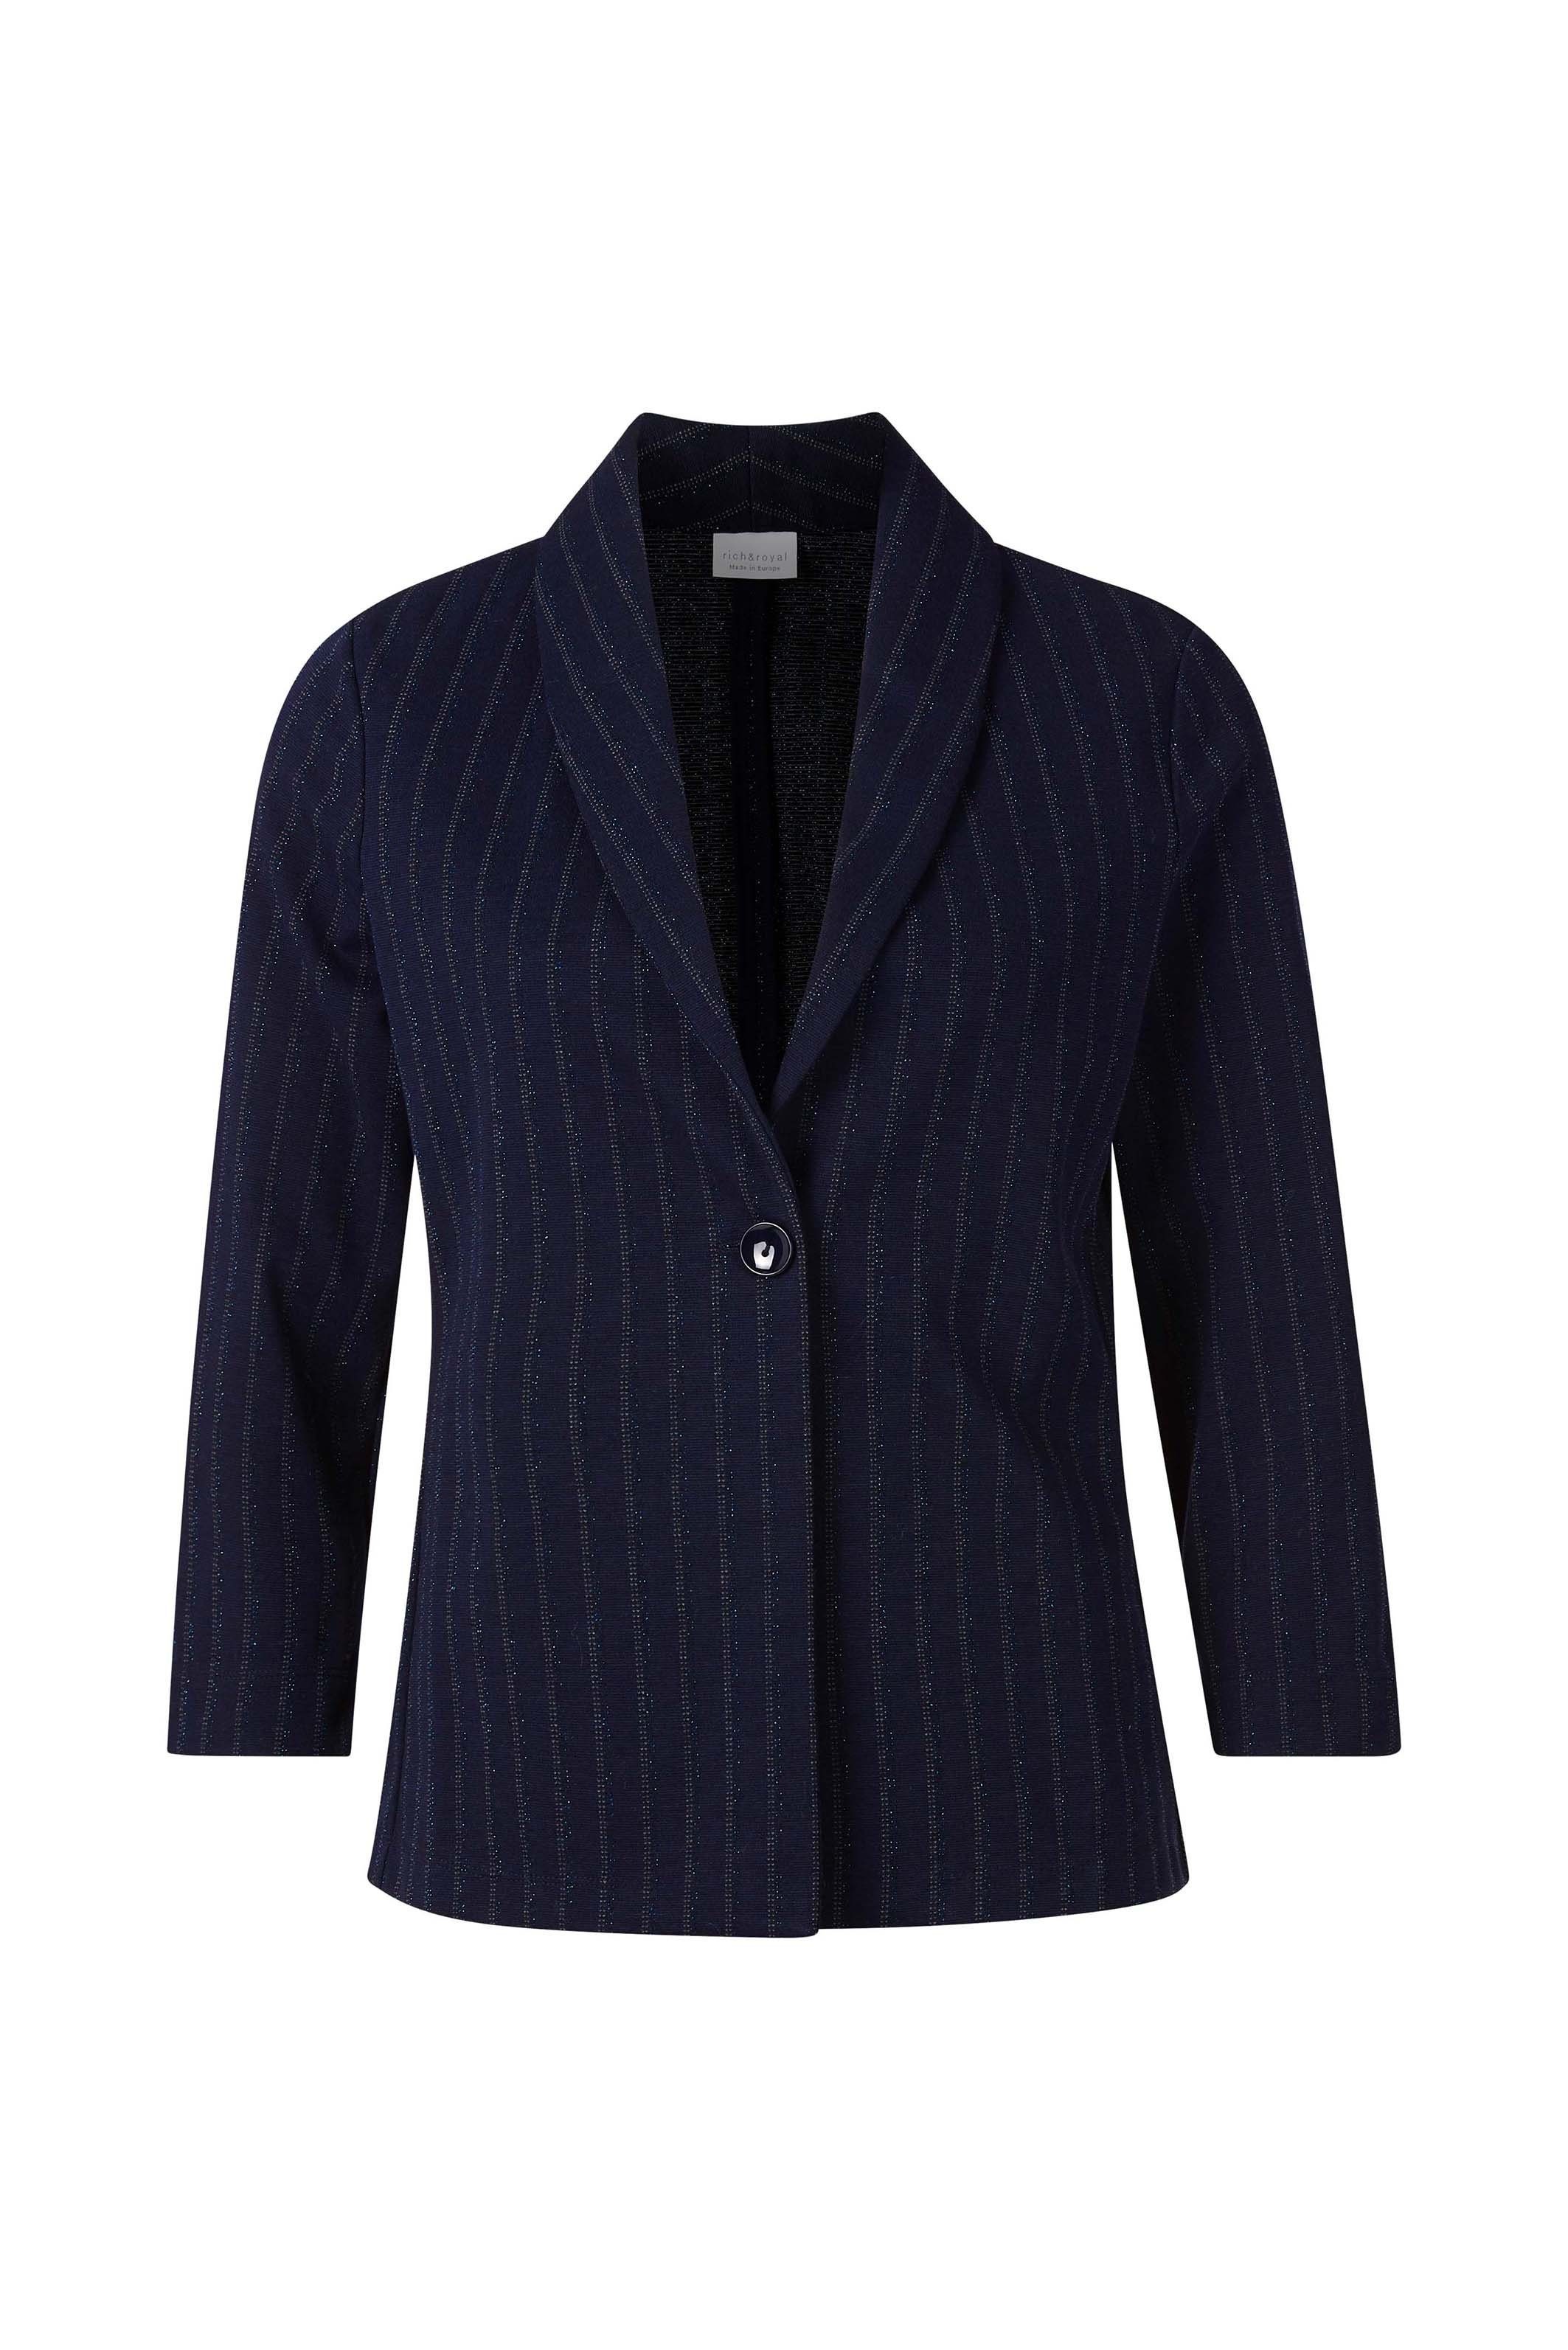 Rich & Royal Jackenblazer pinstripes blazer | Jackenblazer